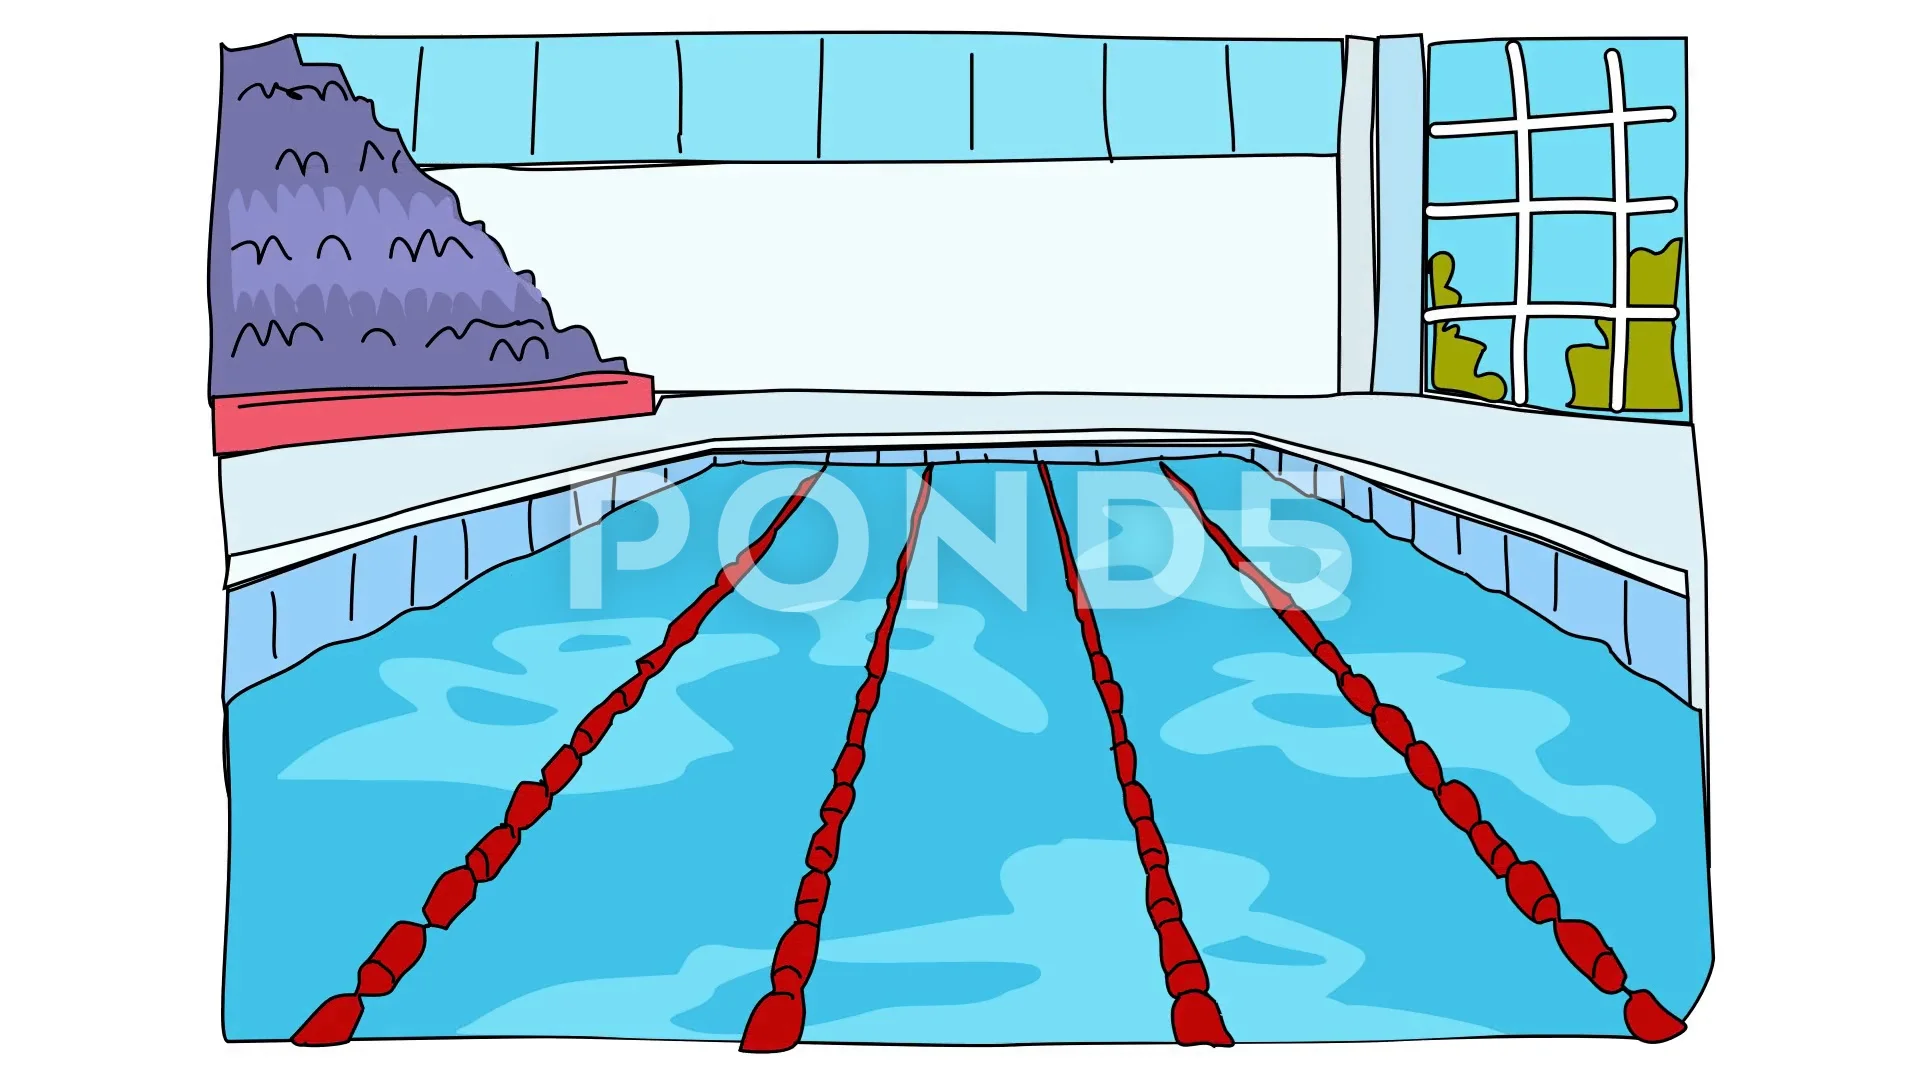 olympic swimming pool diagram